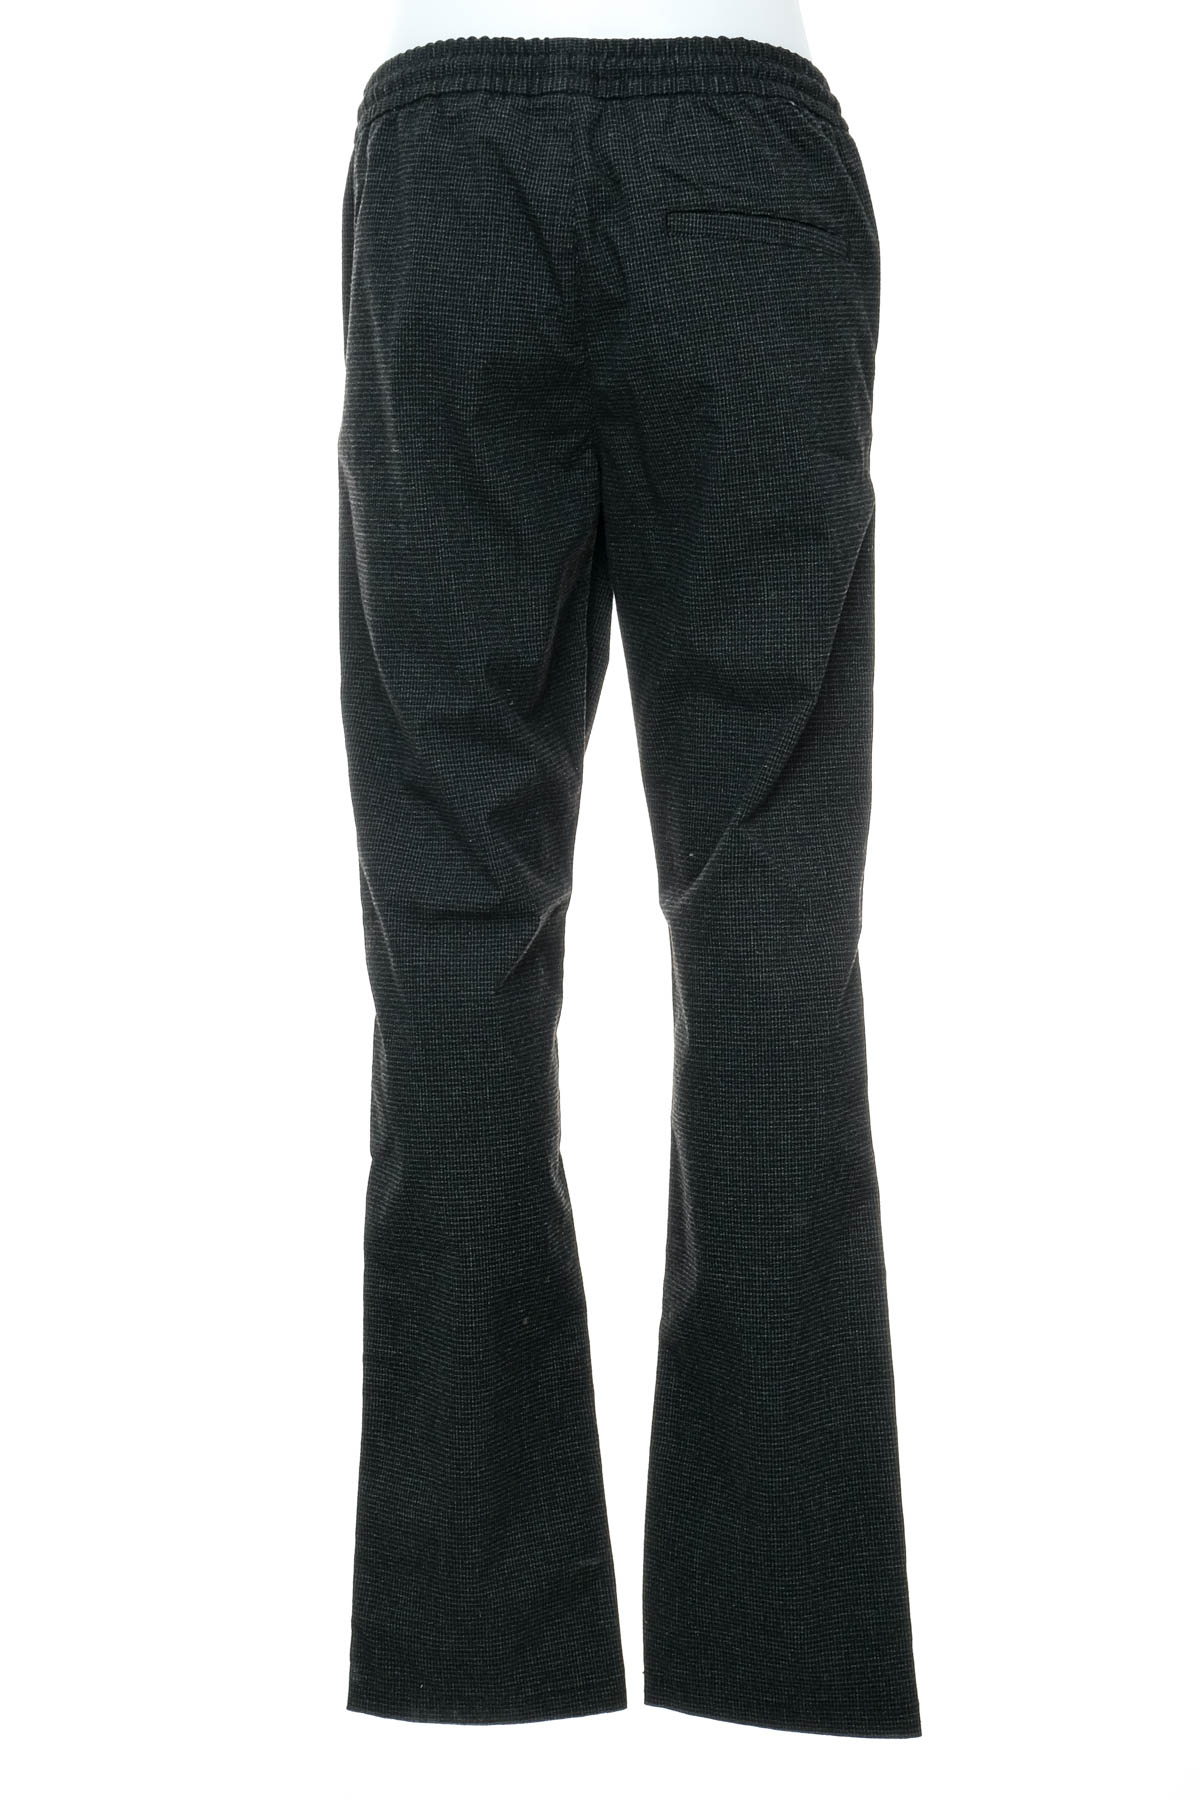 Pantalon pentru băiat - TOM TAILOR - 1